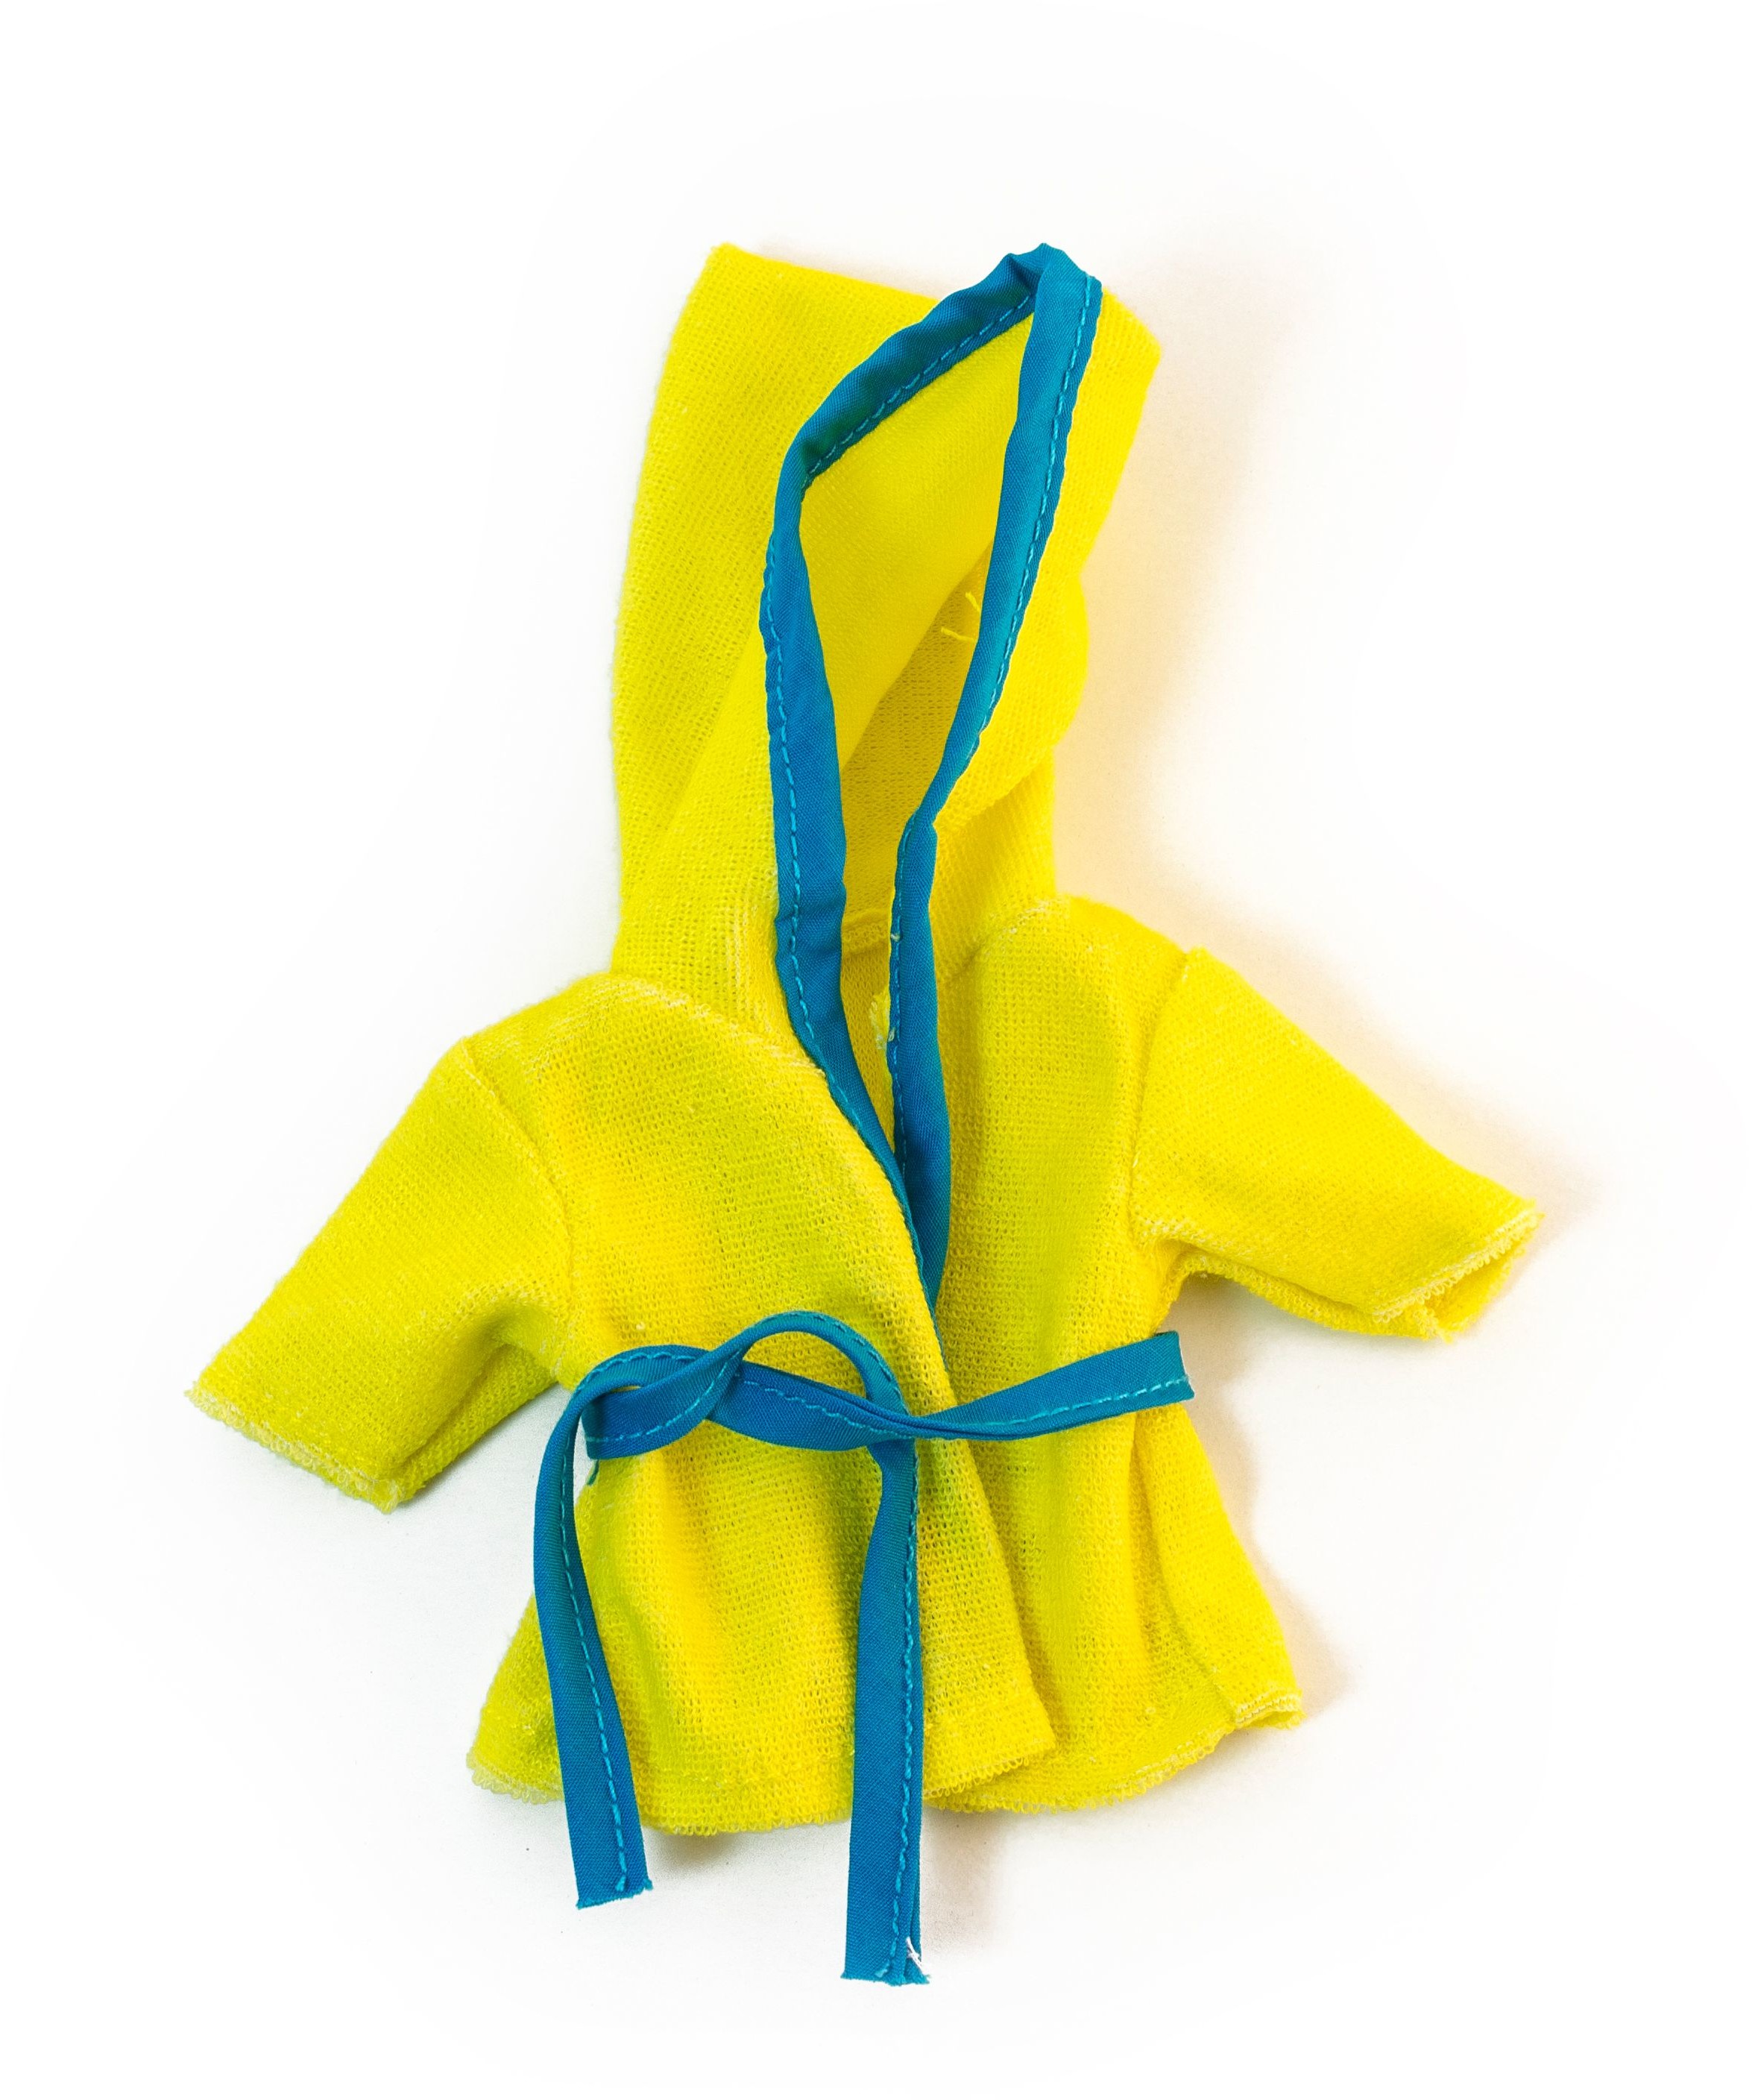 Miniland Ubranko dla lalki 21 cm żółty szlafrok